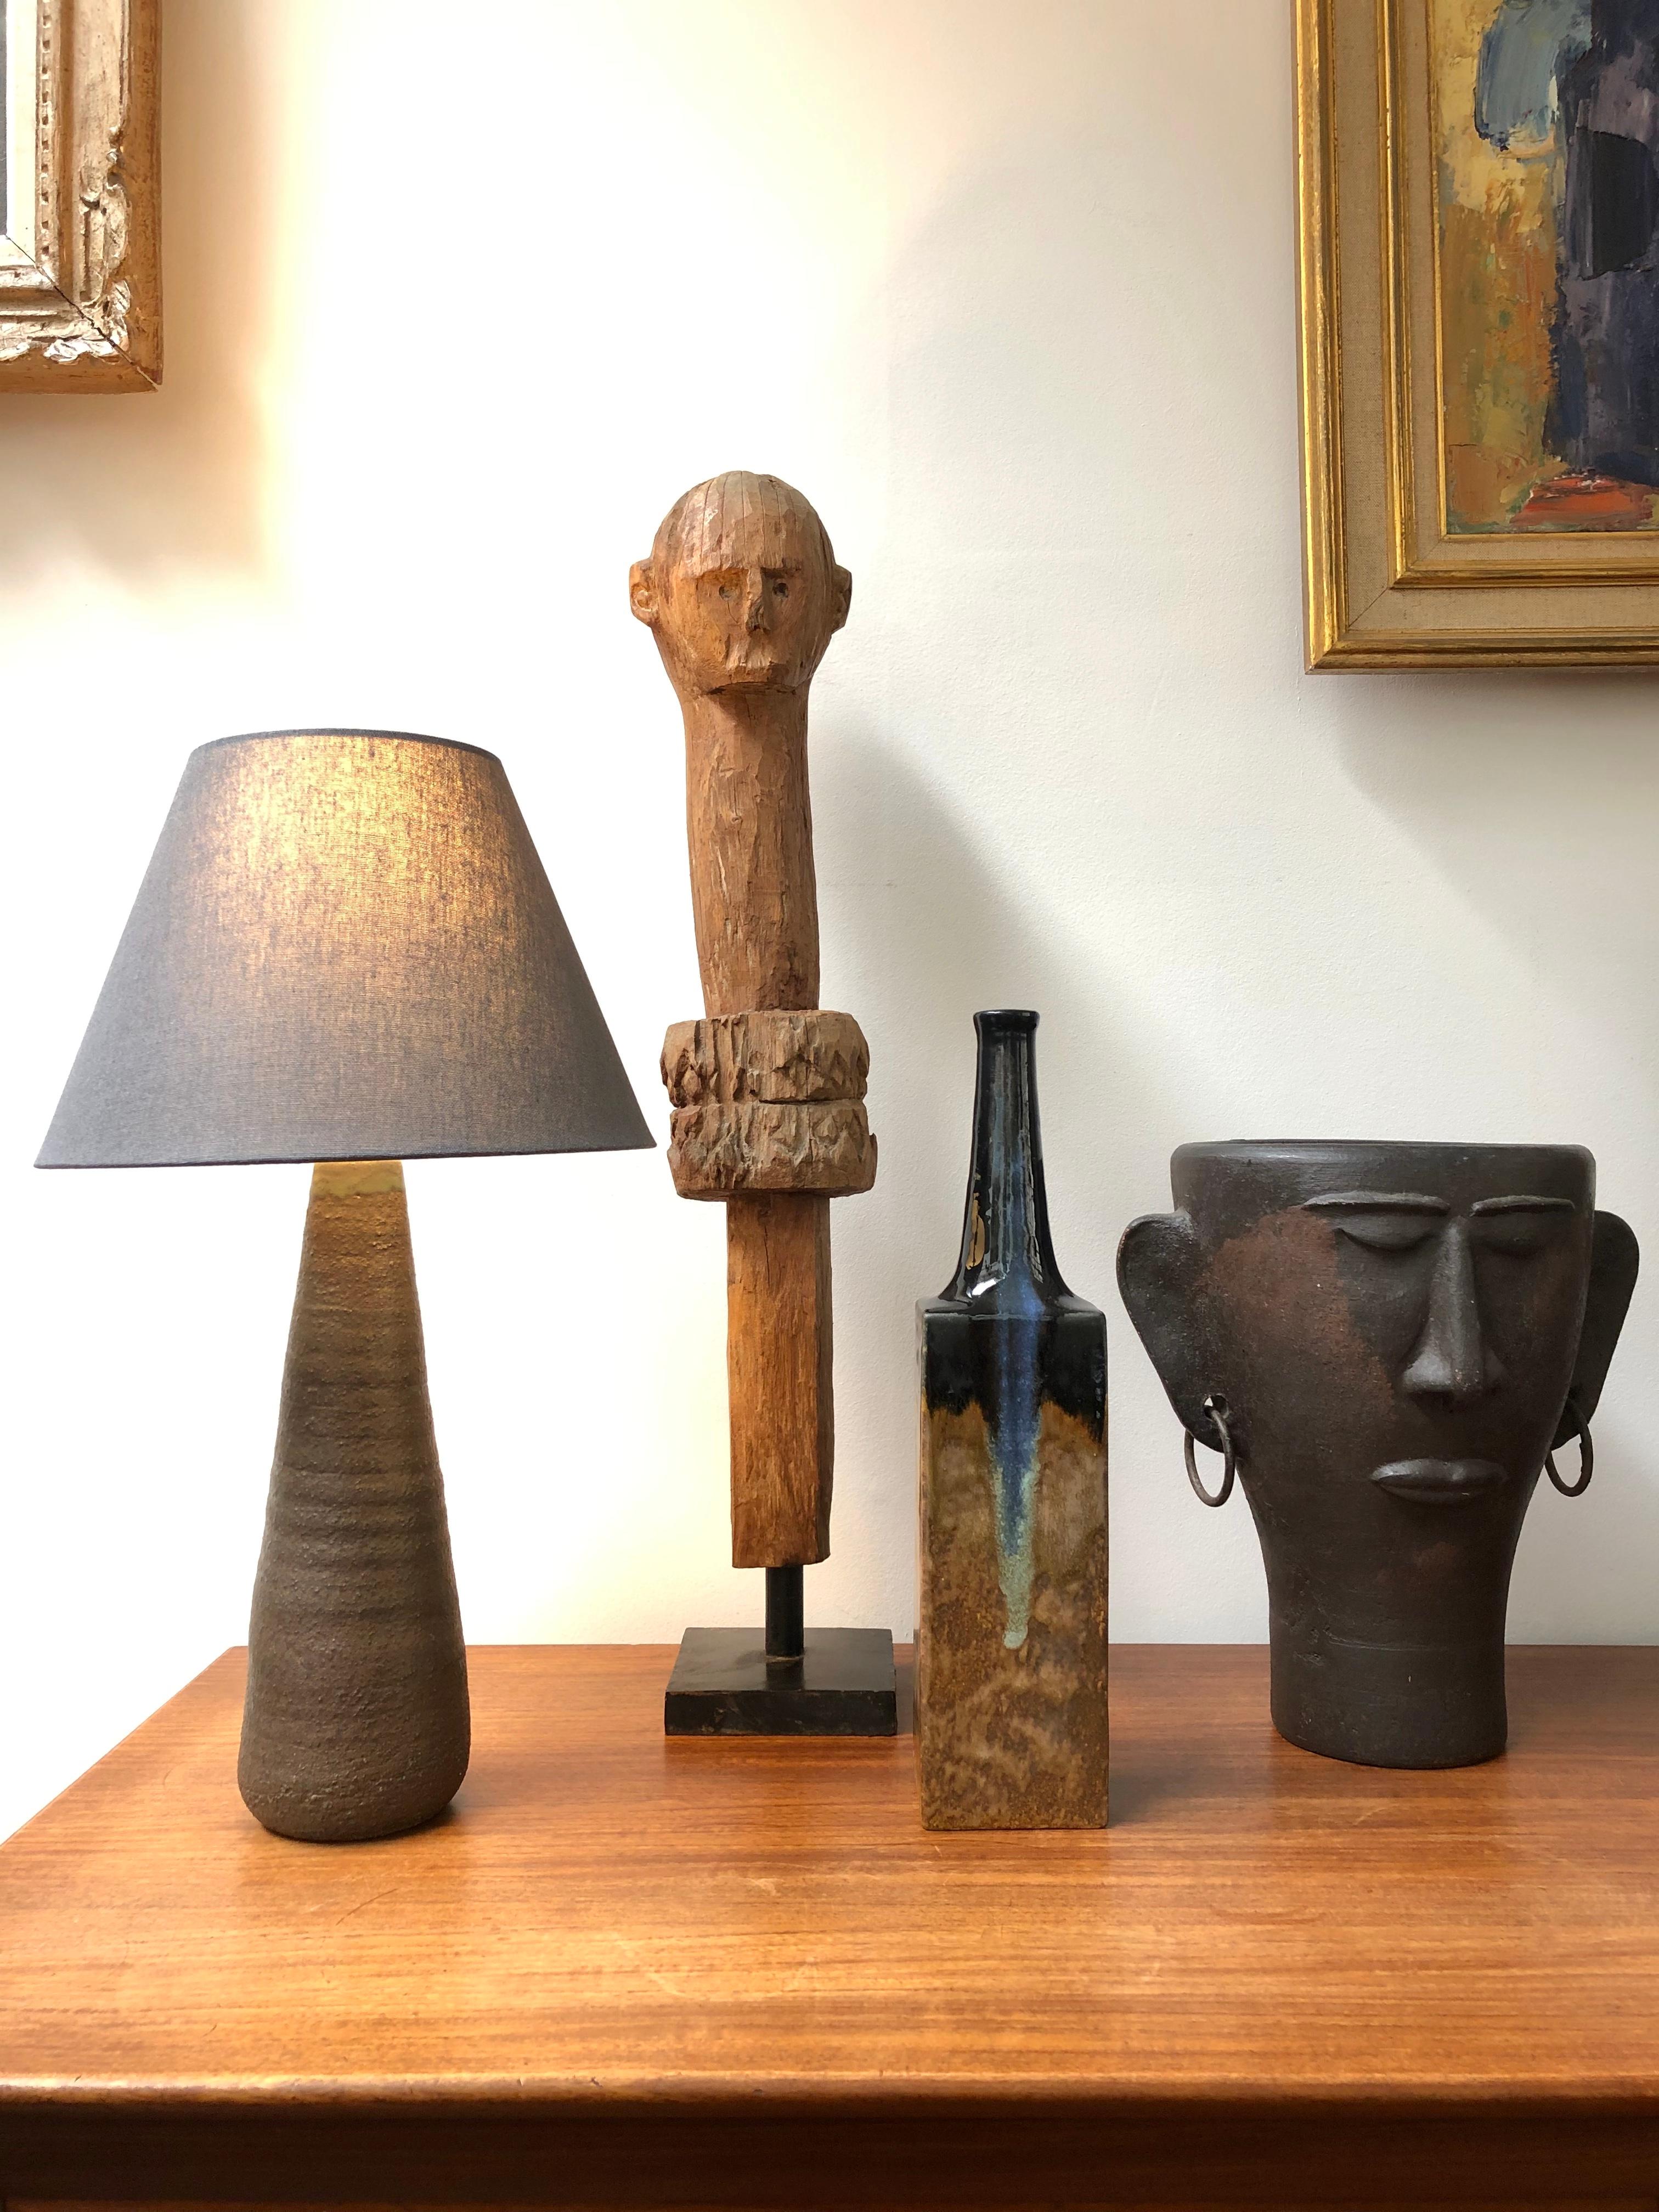 Keramikvase des Keramikers Bruno Gambone, (ca. 1980er Jahre). Diese elegante Vase in Form einer Flasche mit schmaler Öffnung ist ein begehrtes Sammlerstück für alle, die die Kunstwerke des unvergleichlichen Bruno Gambone schätzen. Der lange,